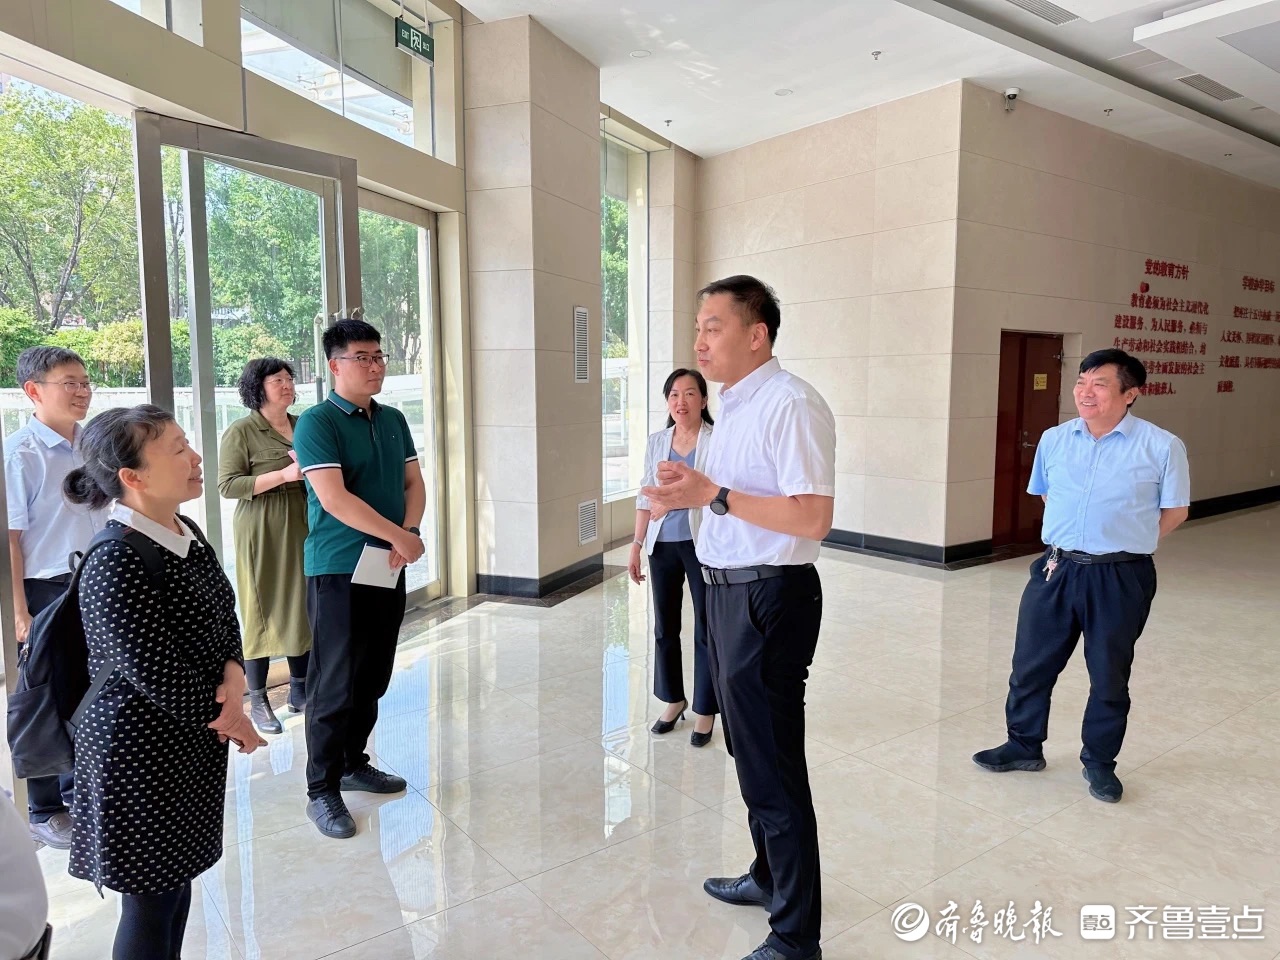 枣庄十五中党委书记,校长梁健对调研组到来表示热烈欢迎,向调研组介绍